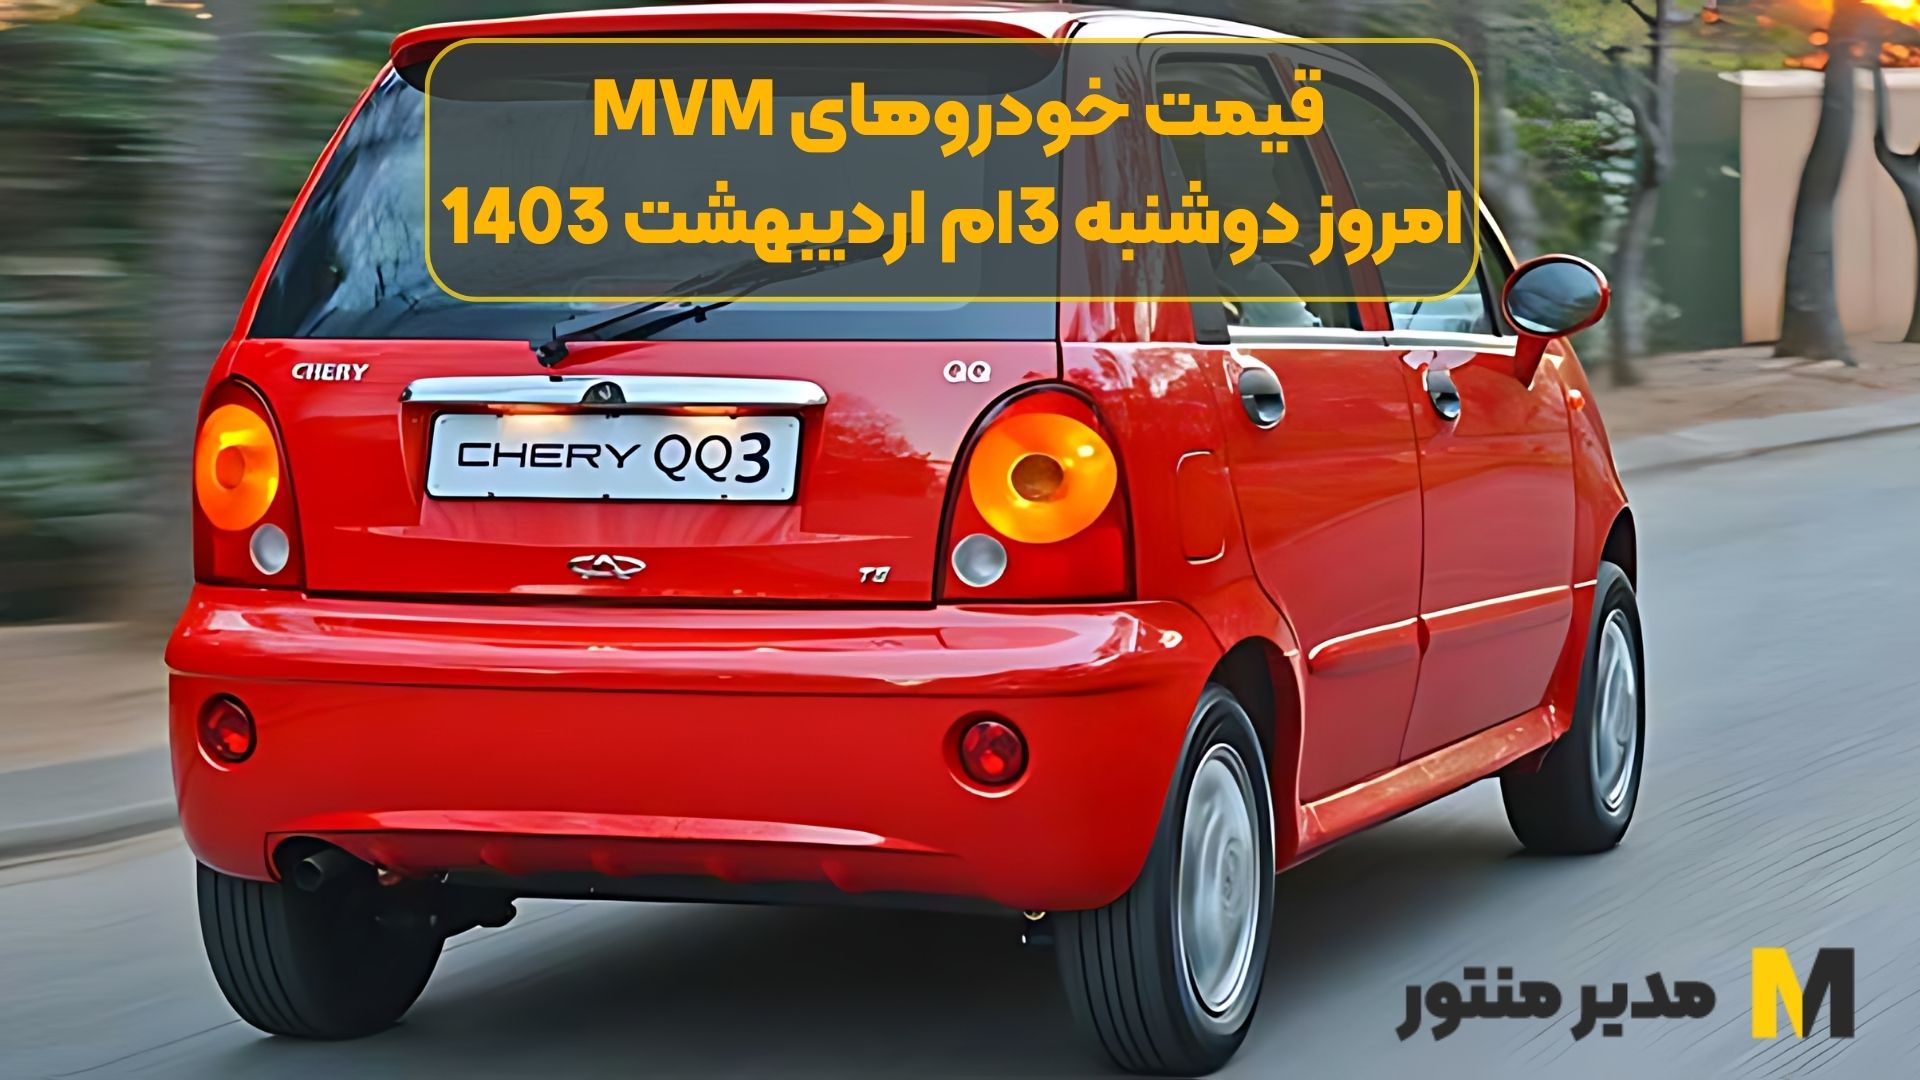 قیمت خودروهای MVM امروز دوشنبه 3ام اردیبهشت 1403